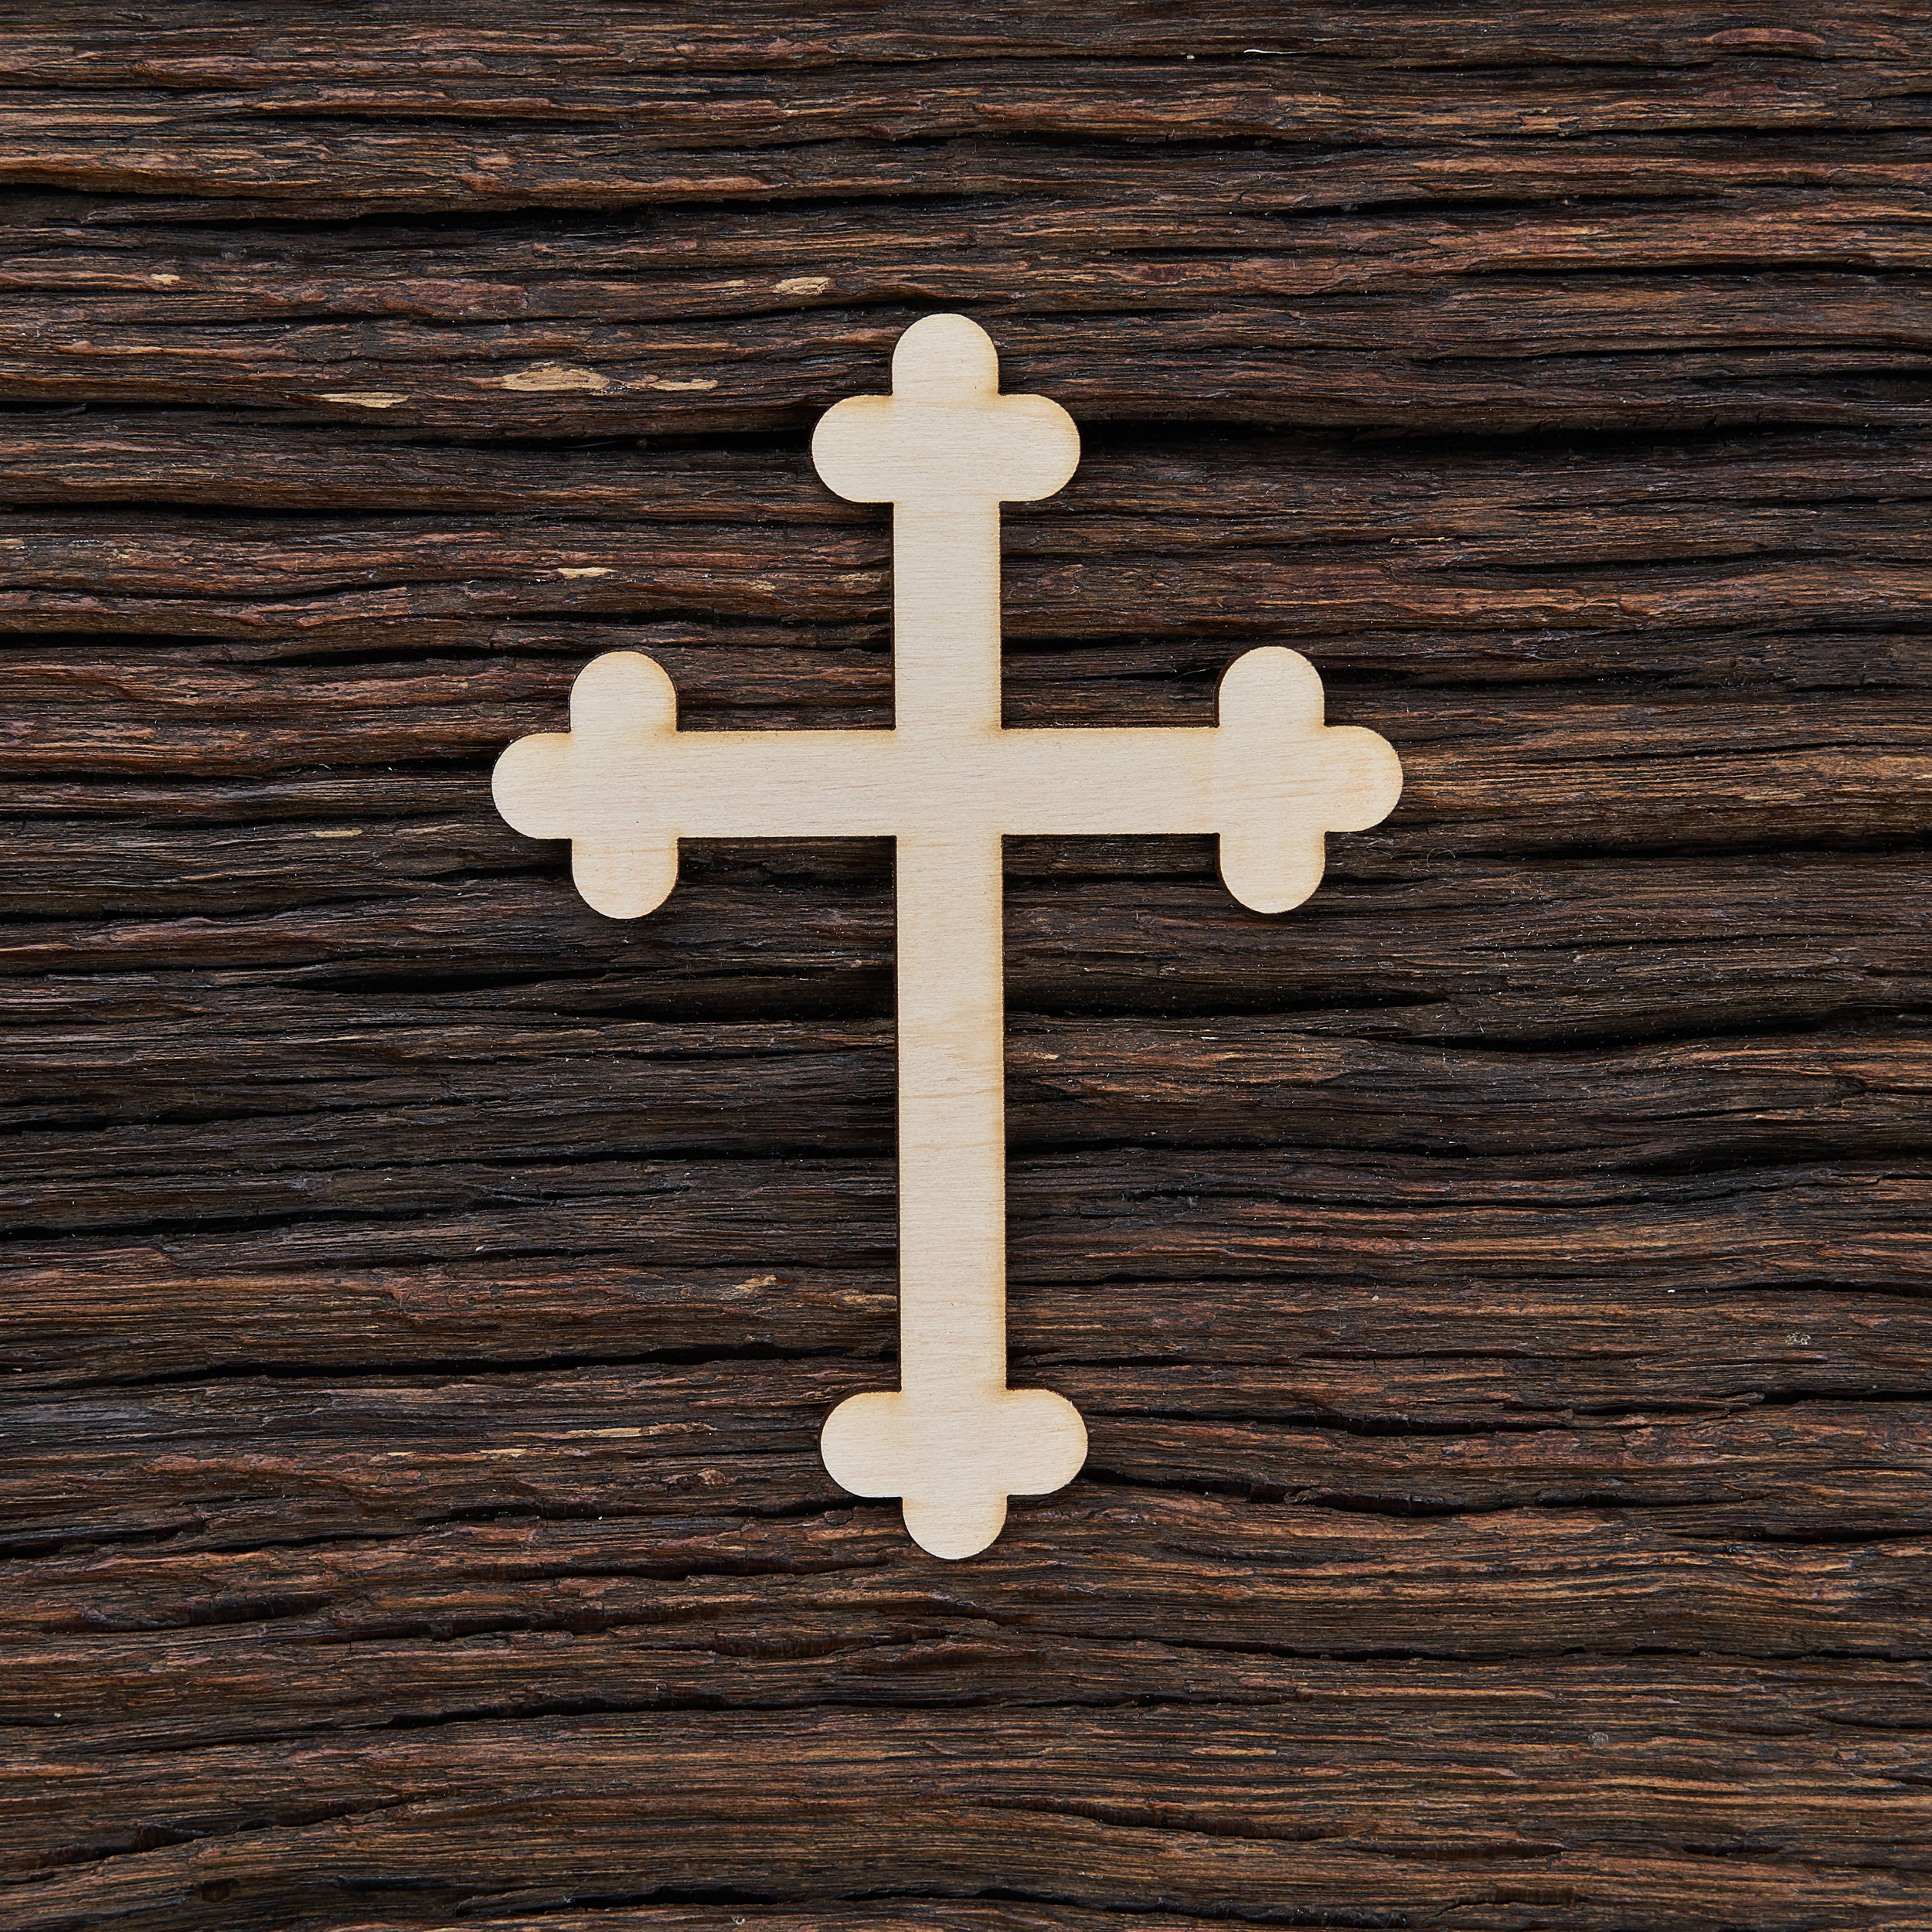 6Senovinis kryžius - medinis gaminys, pjautas lazeriu - dekoravimui ir dažymui